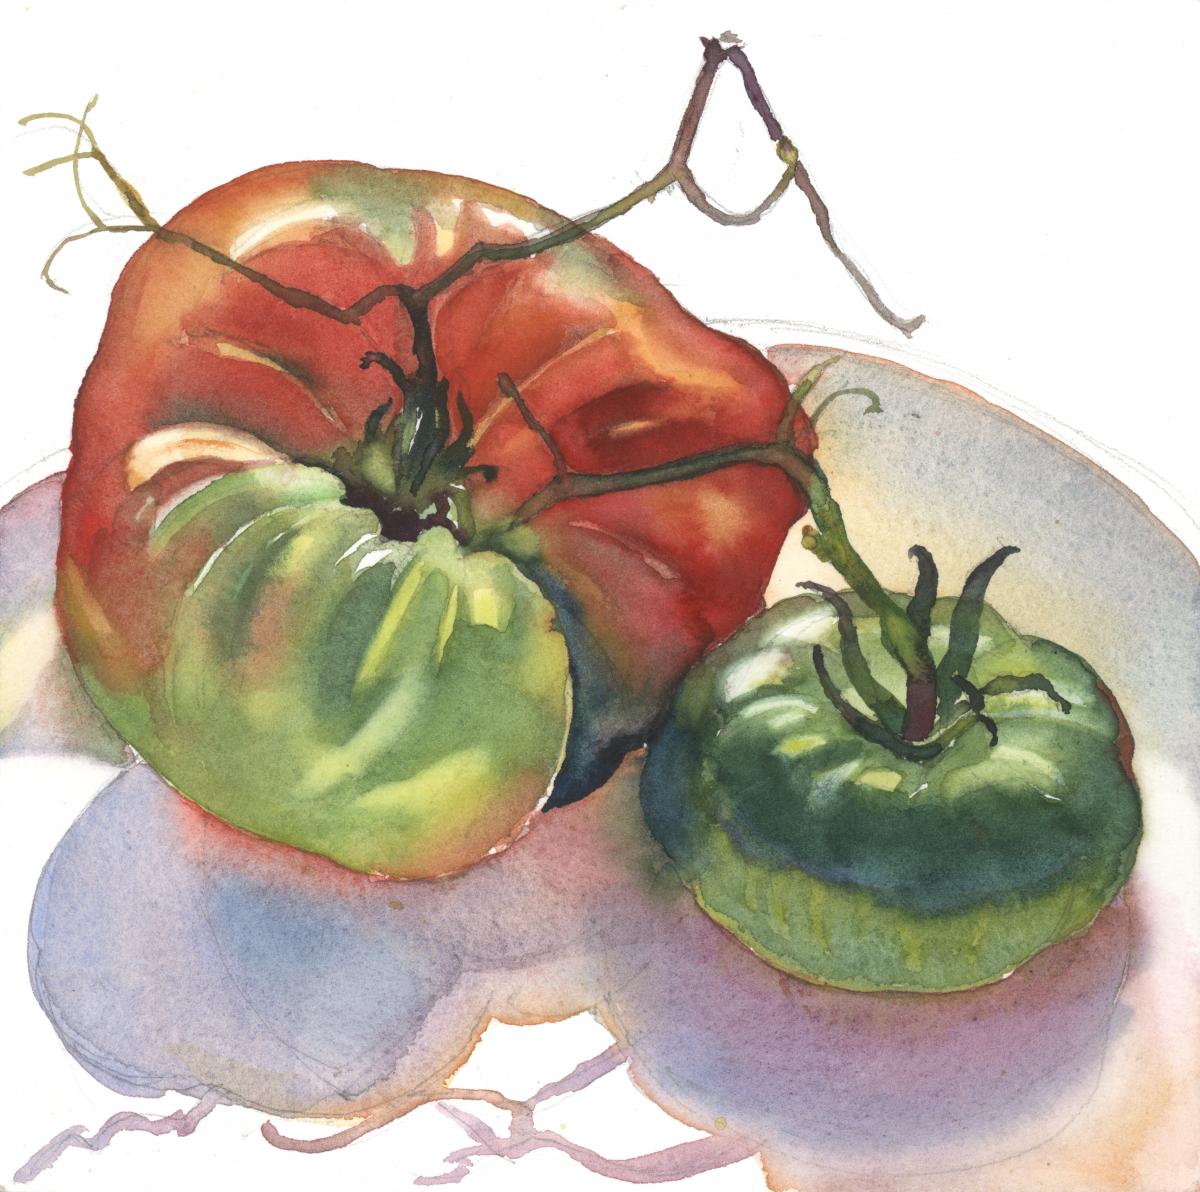 Season’s Last Tomatoes